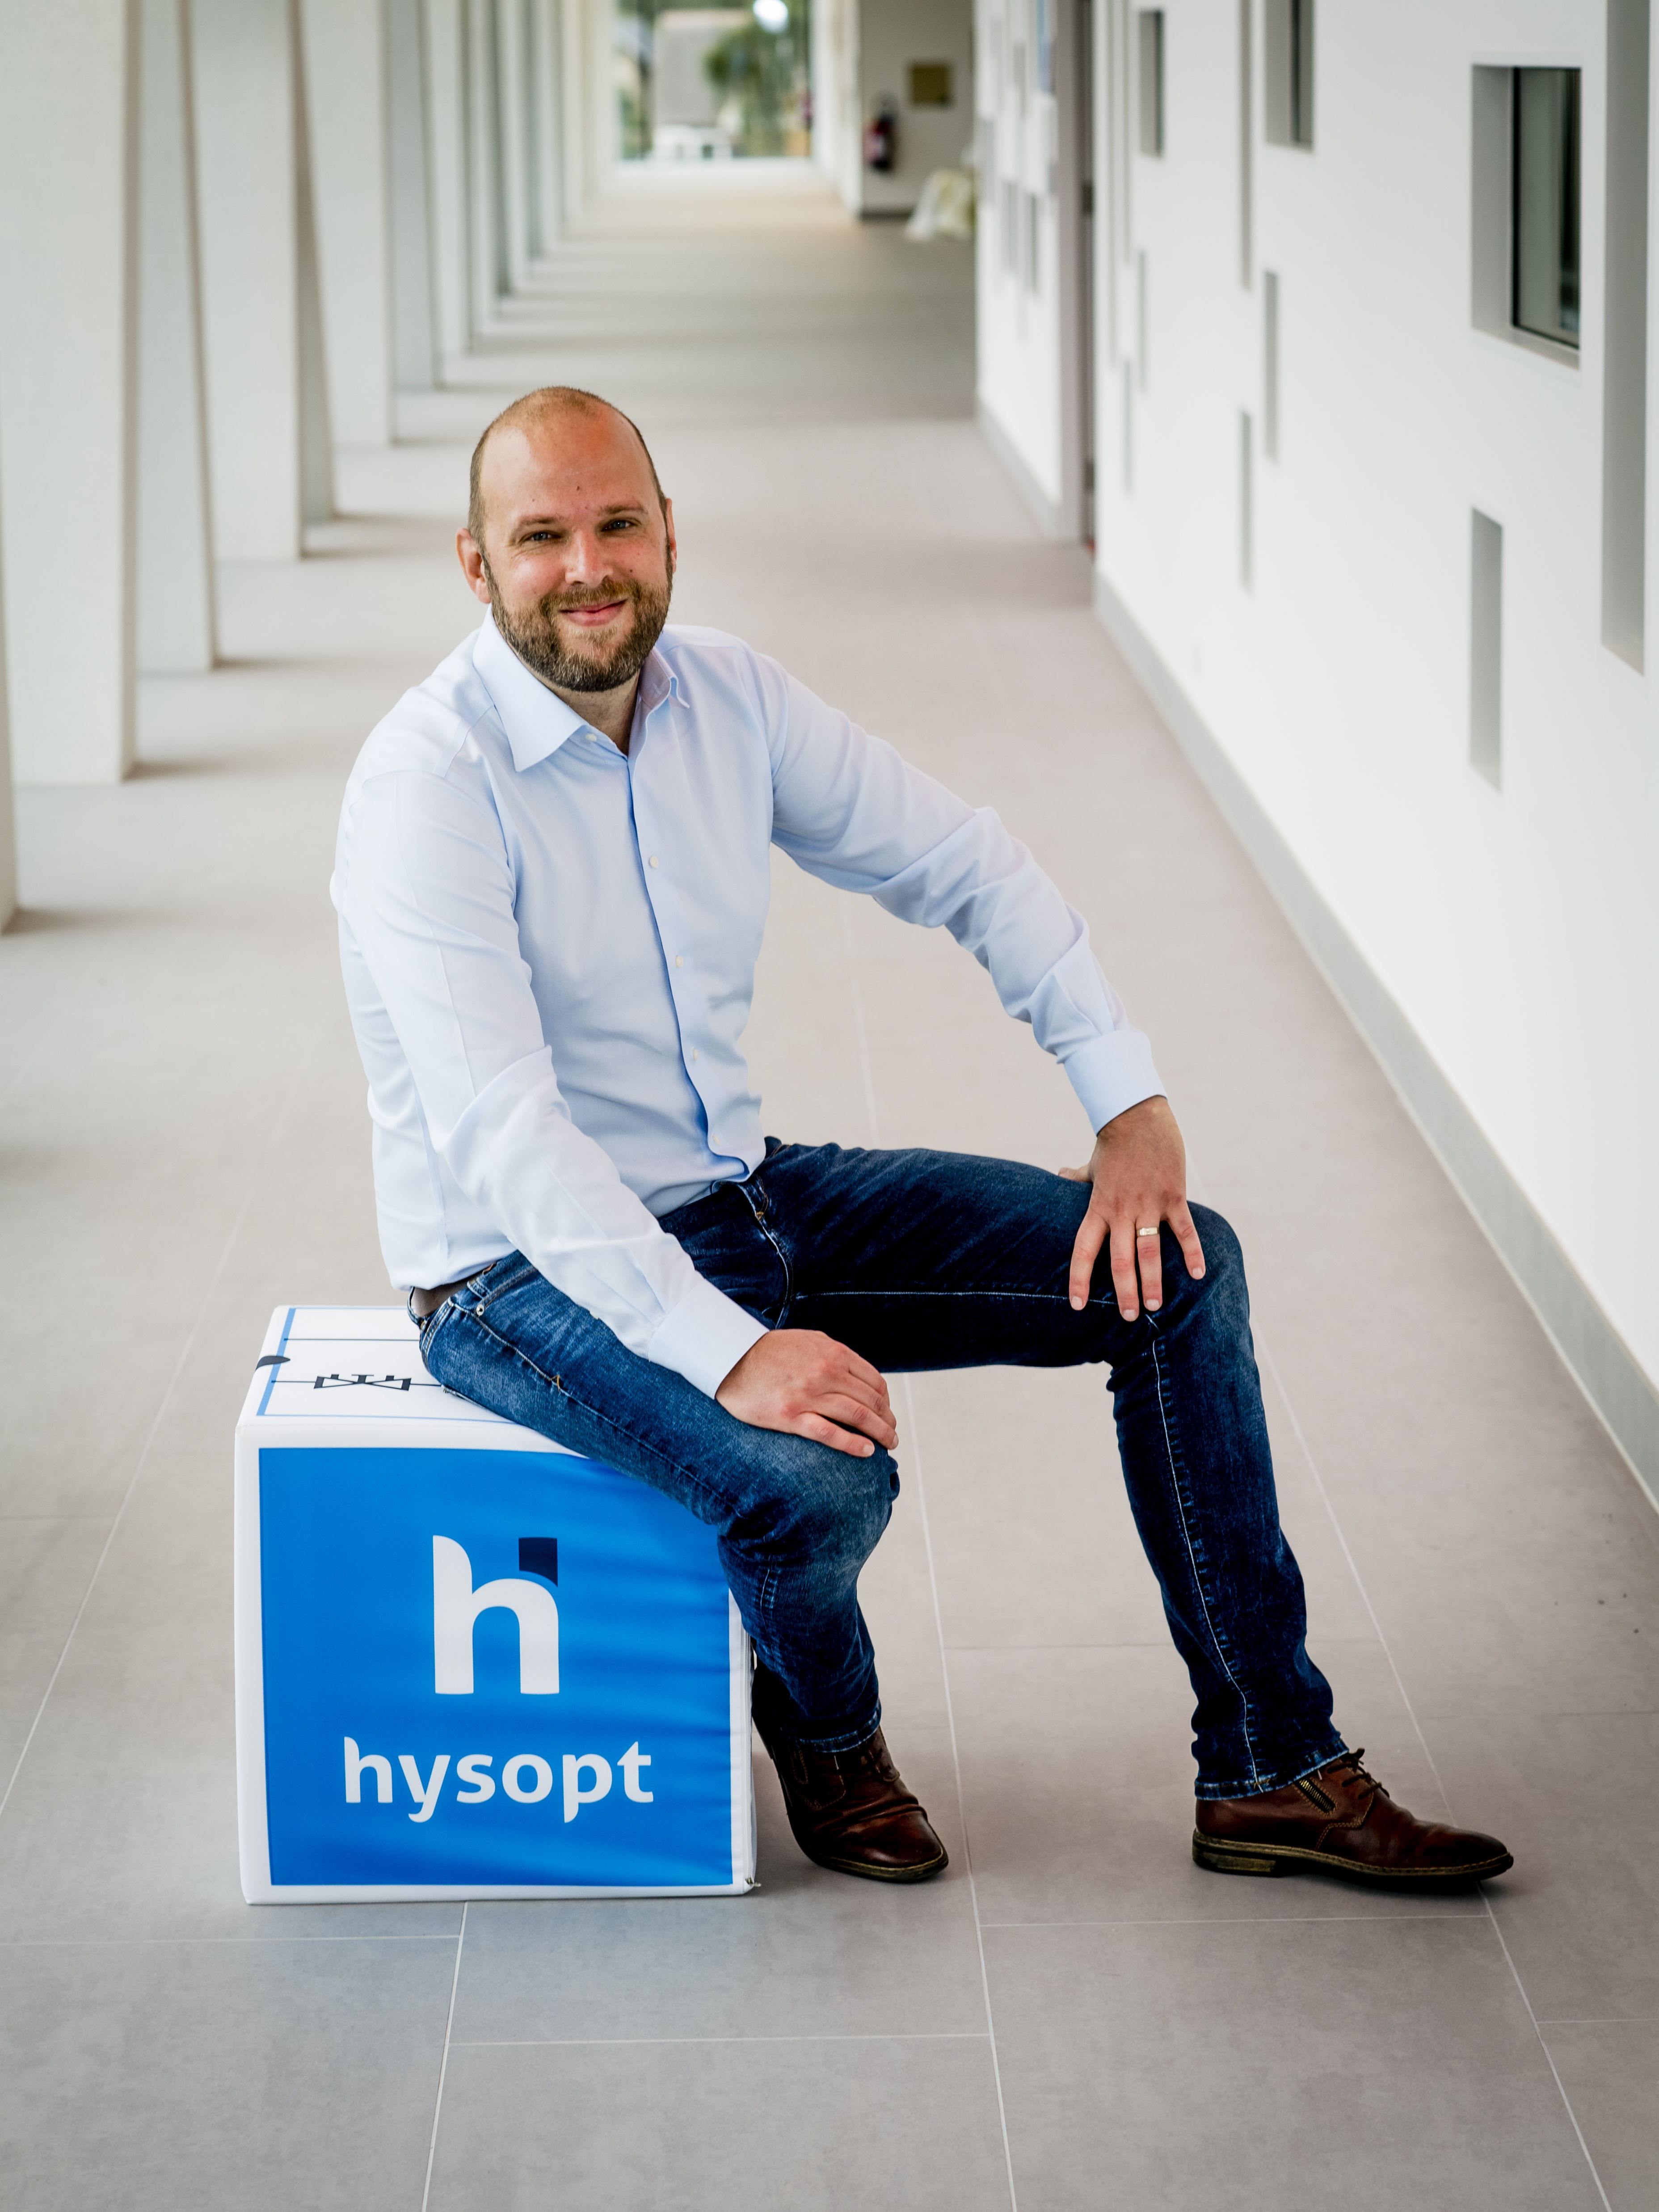 Hysopt, de Belgische pionier en technologisch wereldleider in HVAC-optimalisatie, stelt op donderdag 29 juni officieel de Hysopt BIM syncer© voor tijdens een gratis webinar.